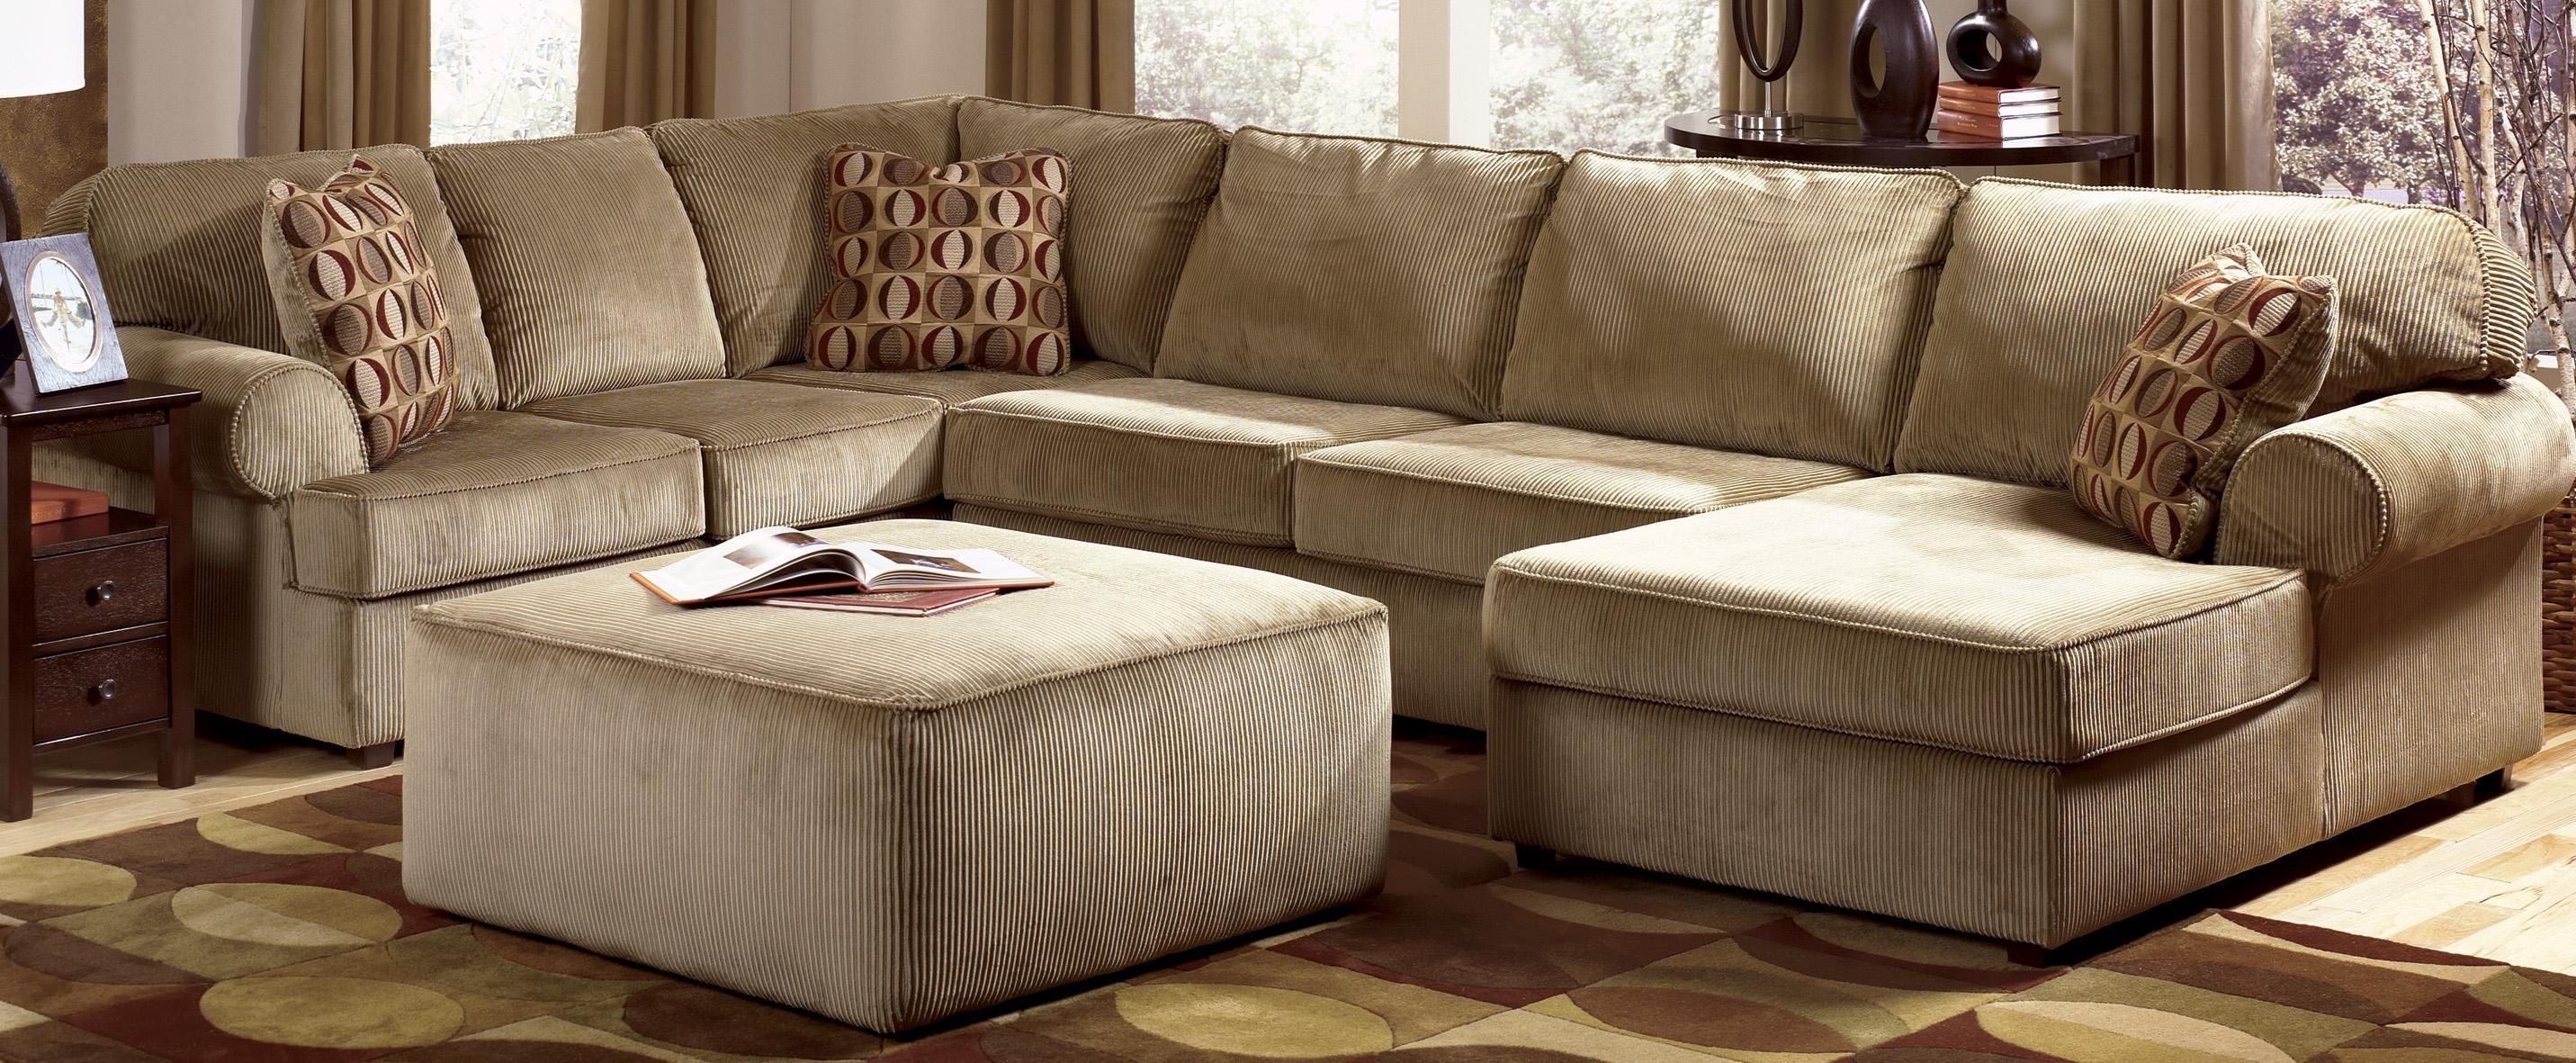 Sofas: Oversized Sofas | Ashley Sectional Sofa | Ashley Furniture Pertaining To Ashley Furniture Brown Corduroy Sectional Sofas (View 16 of 20)